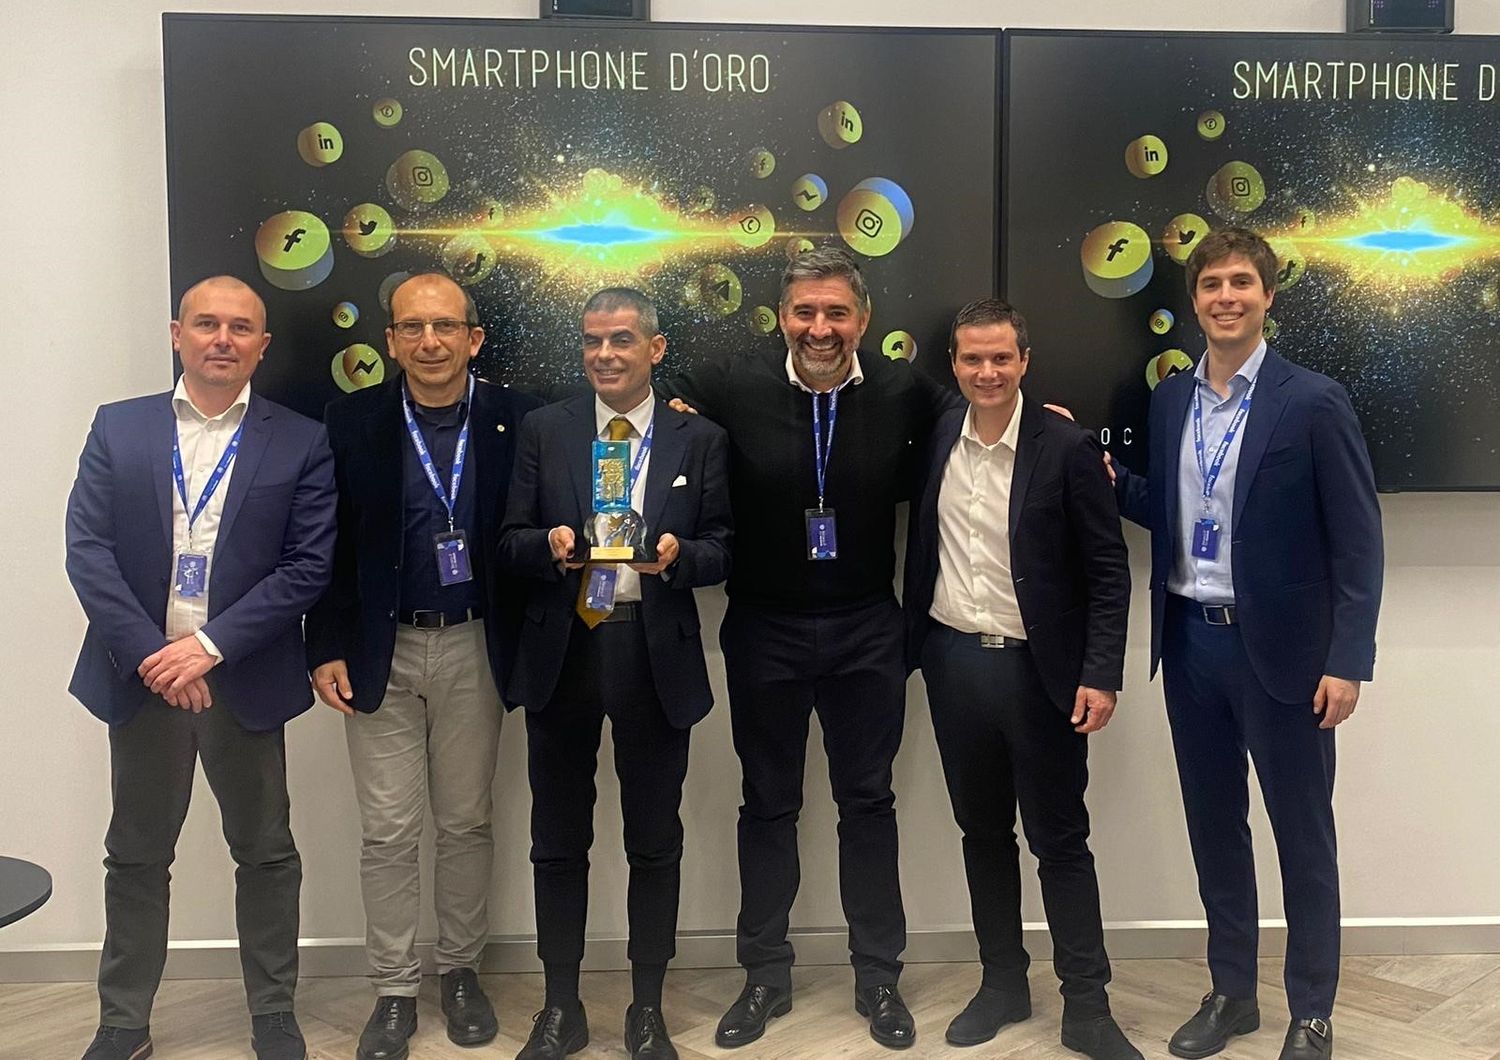 Il team dell'Aou di Cagliari premiato con lo 'Smartphone d'oro'